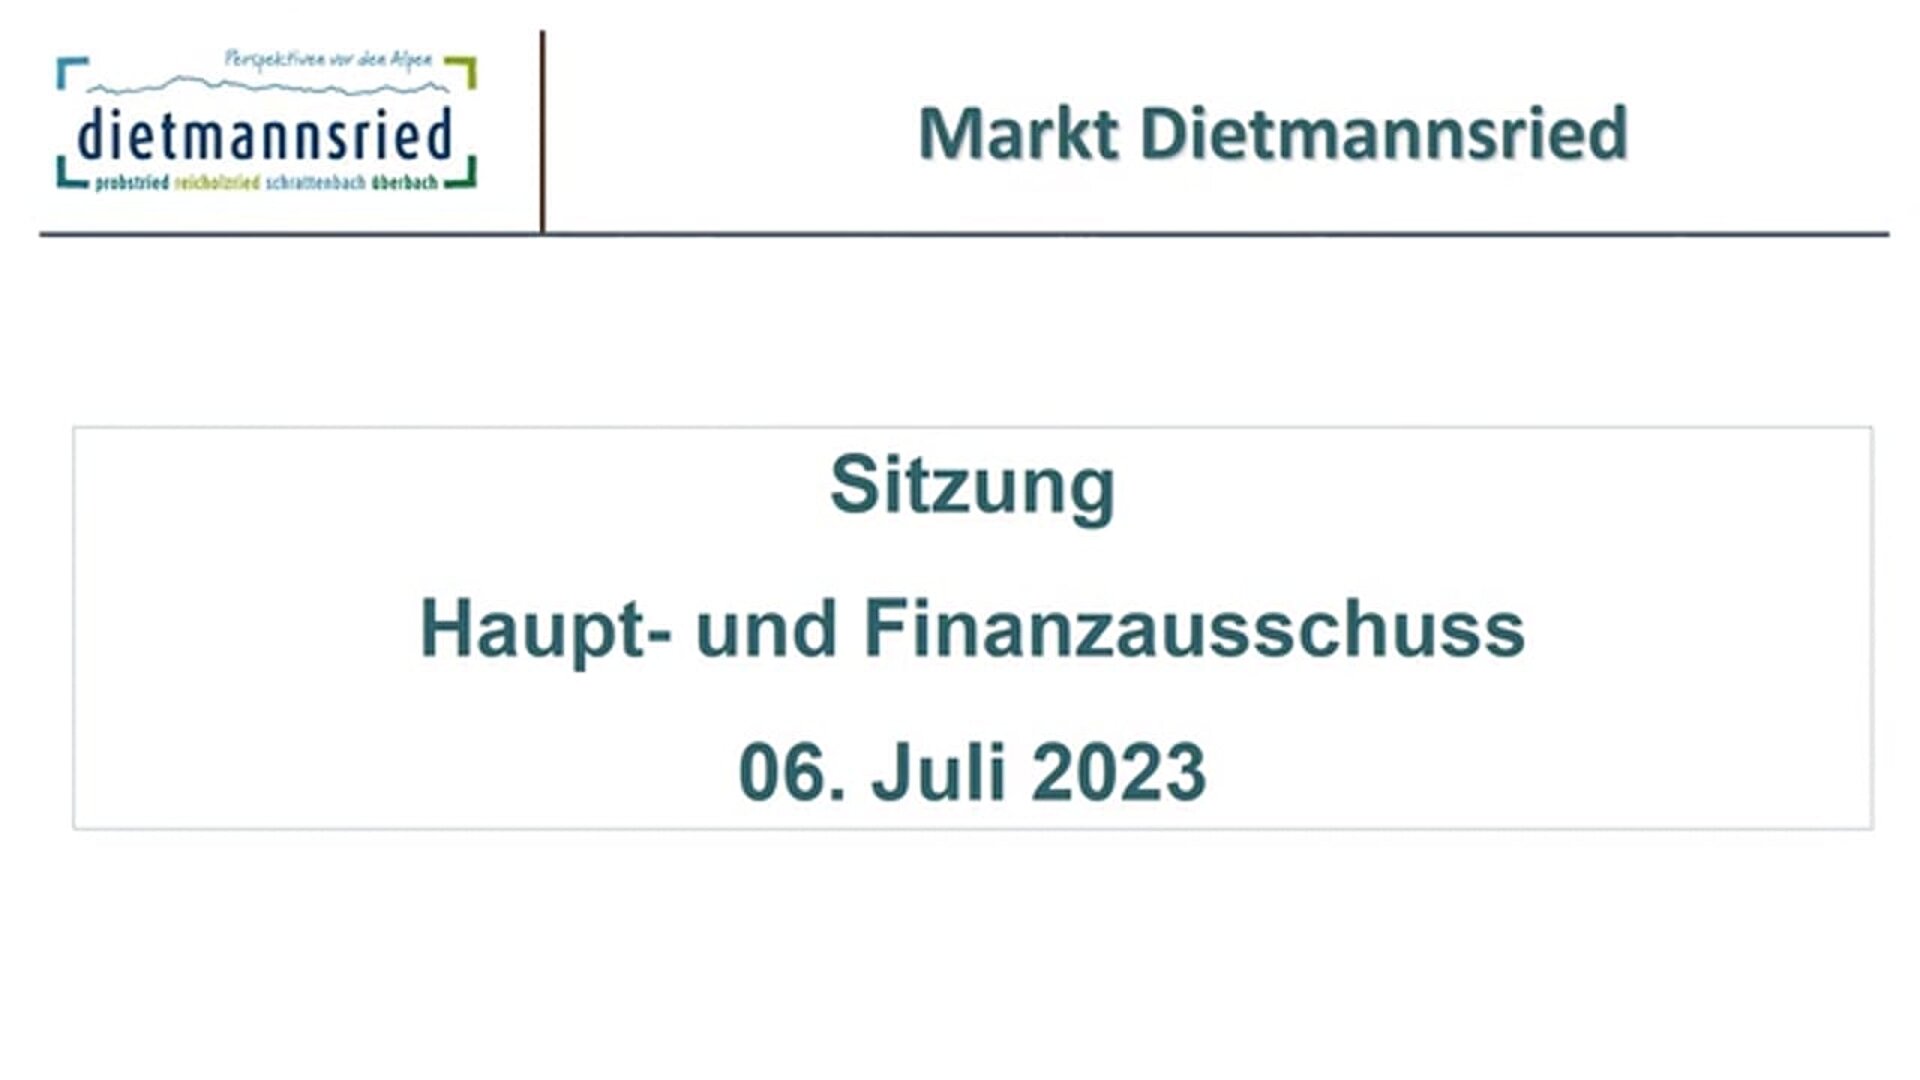 Sitzung Haupt- und Finanzausschuss vom 06. Juli 2023